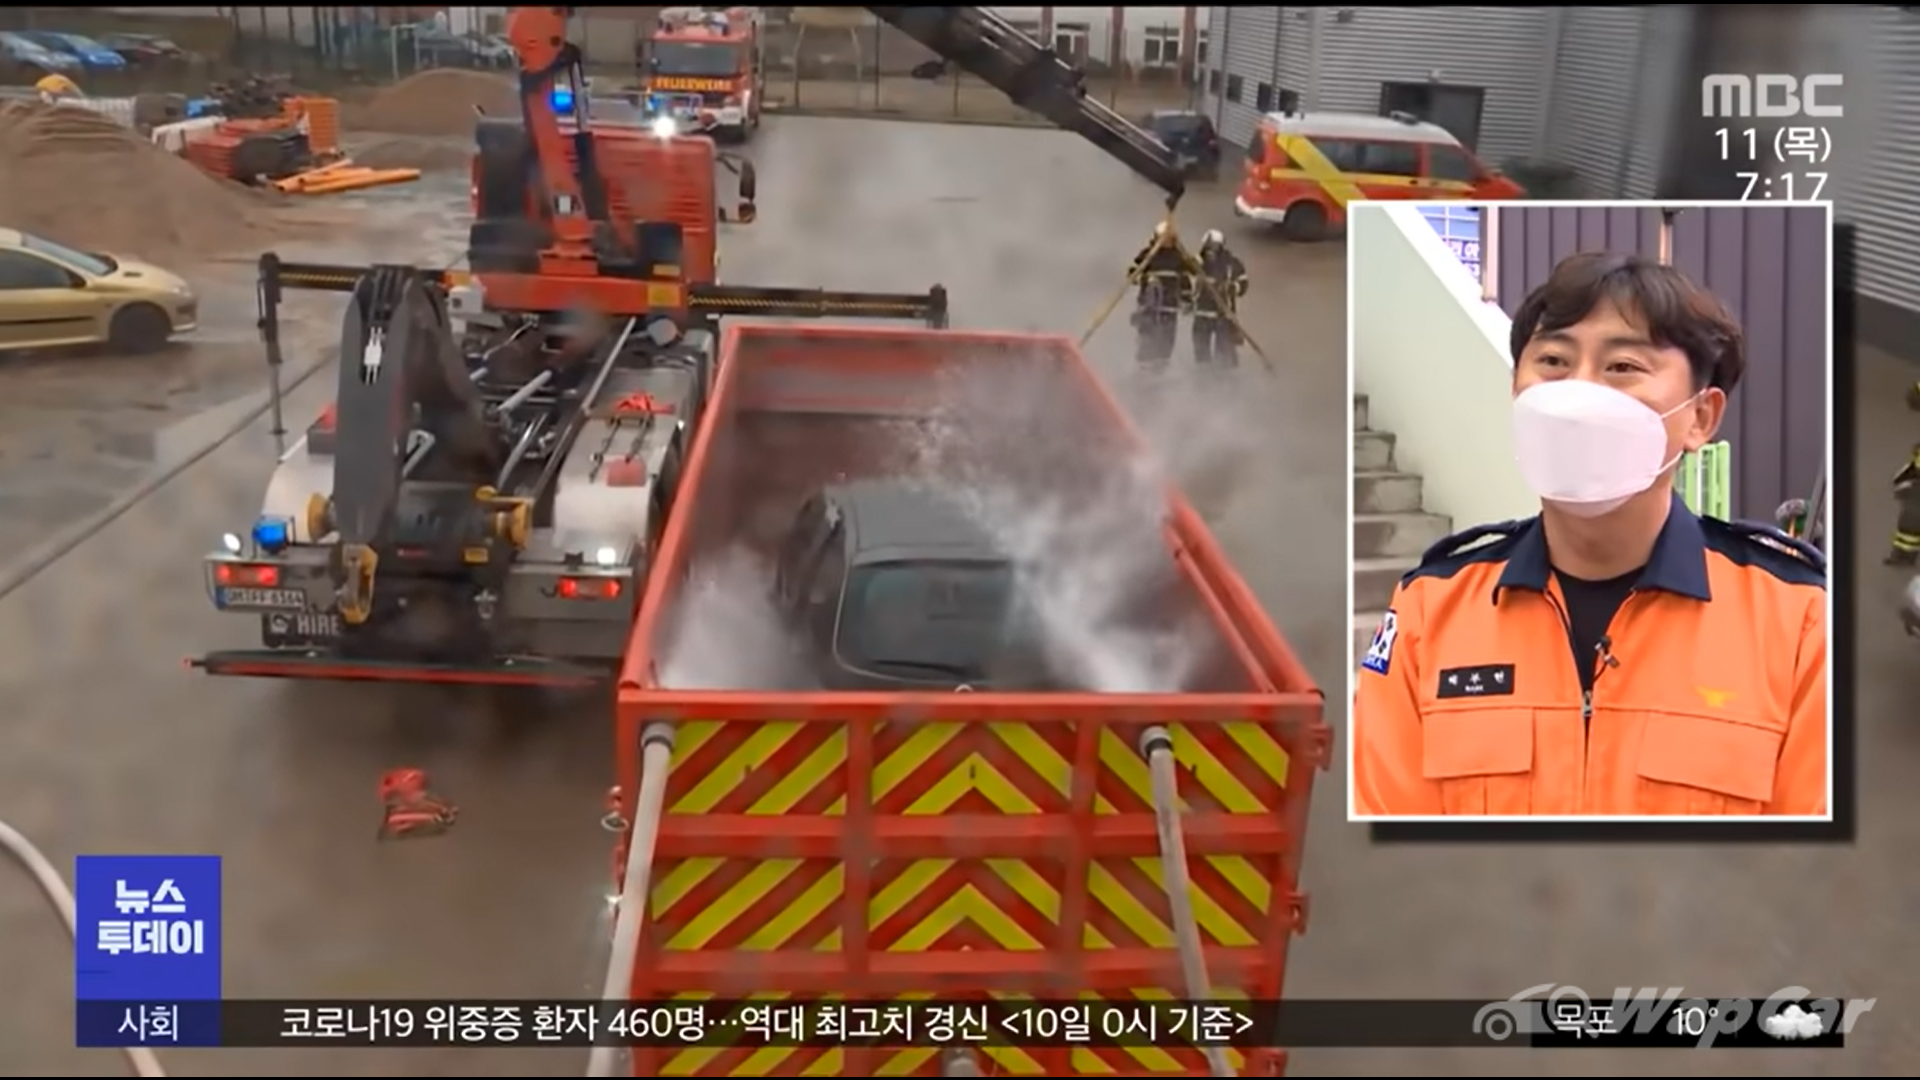 คนใช้รถอีวีผวา หลังนักดับเพลิงไม่สามารถดับไฟ Hyundai Ioniq 5 หลังเกิดอุบัติเหตุ